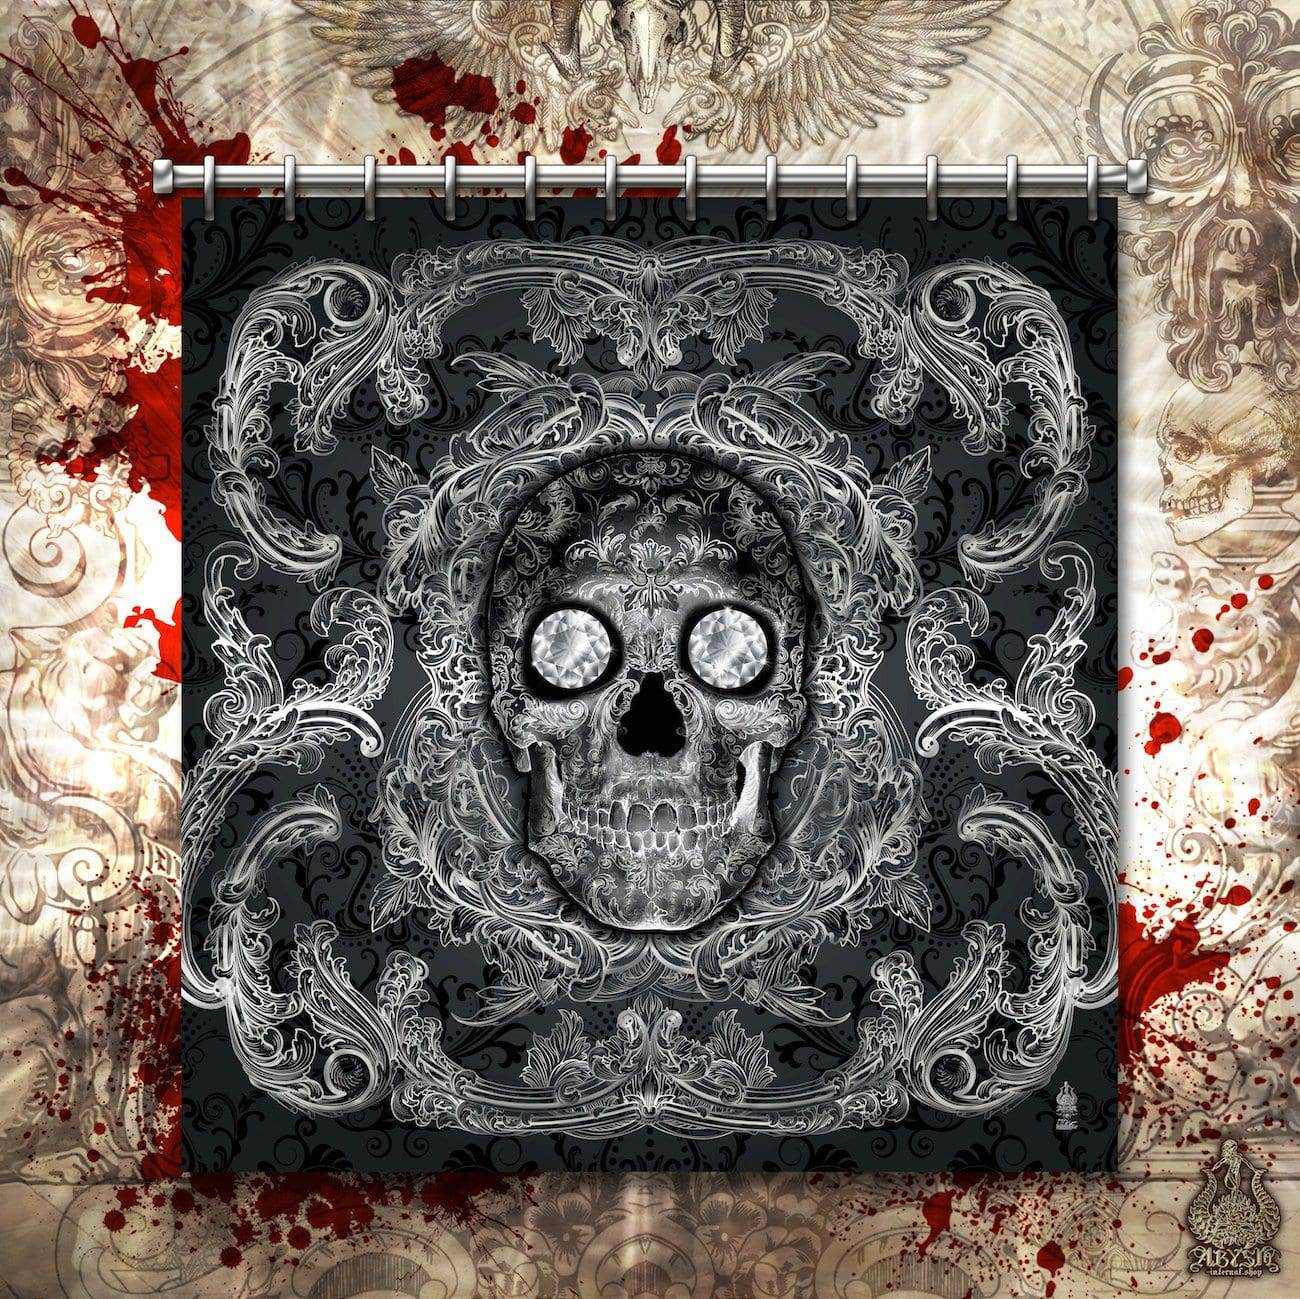 Skull Shower Curtain, Gothic Bathroom Decor, Macabre Art - Dark - Abysm Internal